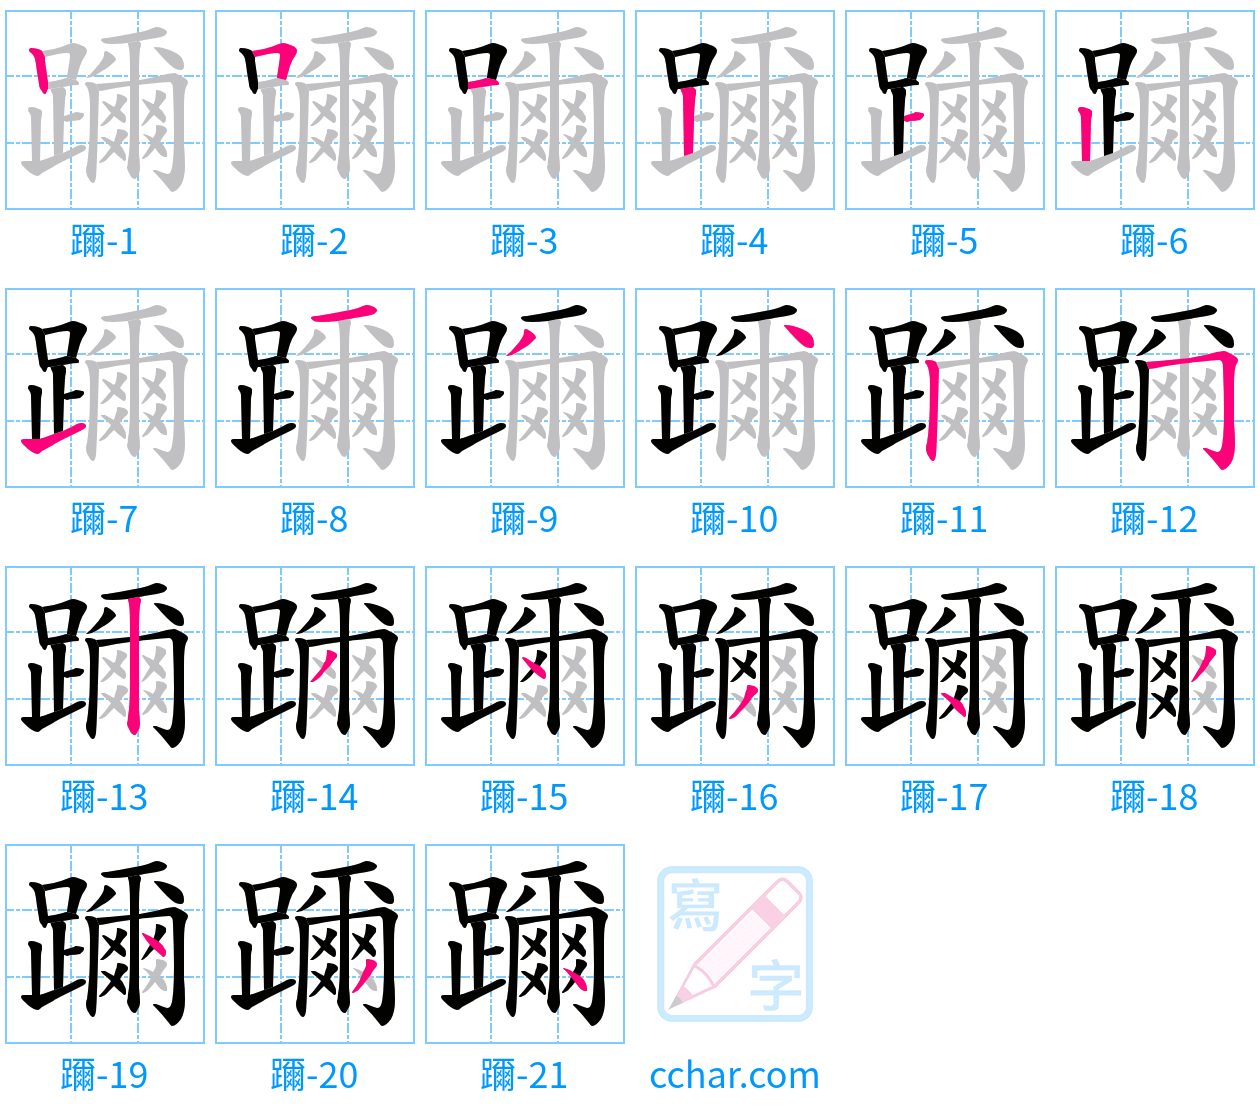 躎 stroke order step-by-step diagram